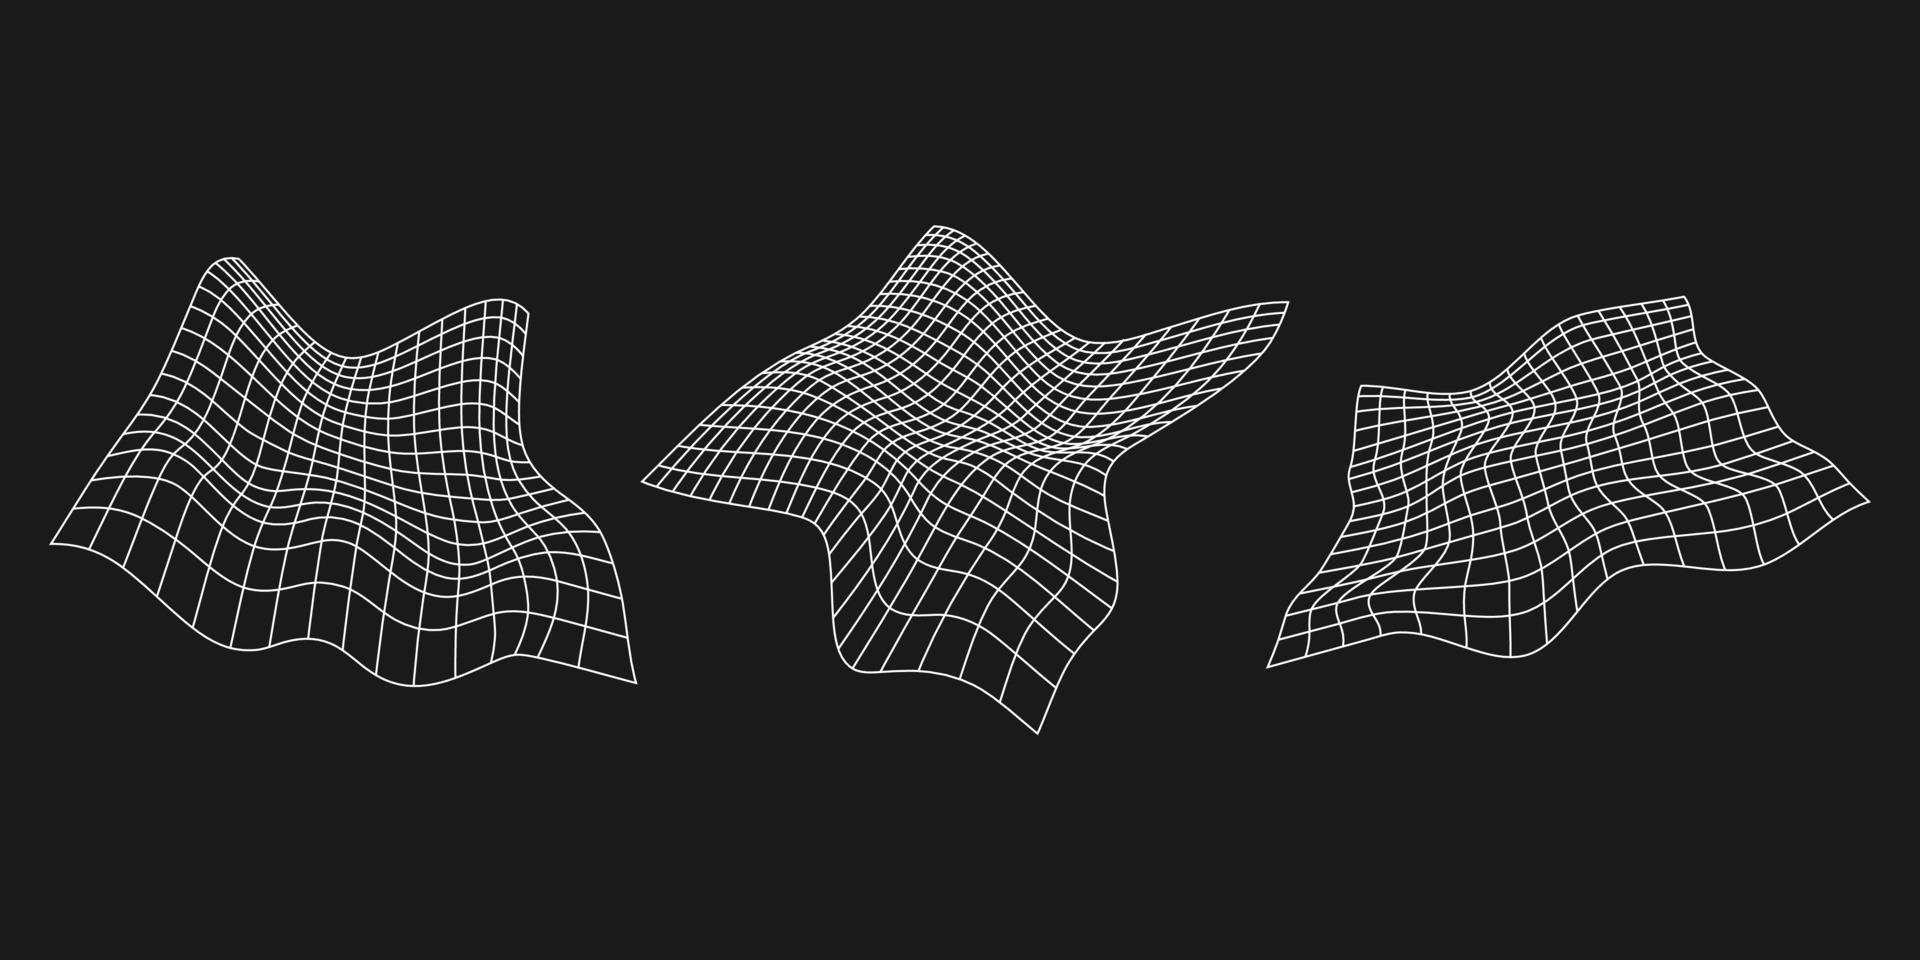 uppsättning av cyber förvrängd rutnät, retro punk- design element. trådmodell Vinka geometri maska på svart bakgrund. vektor illustration.